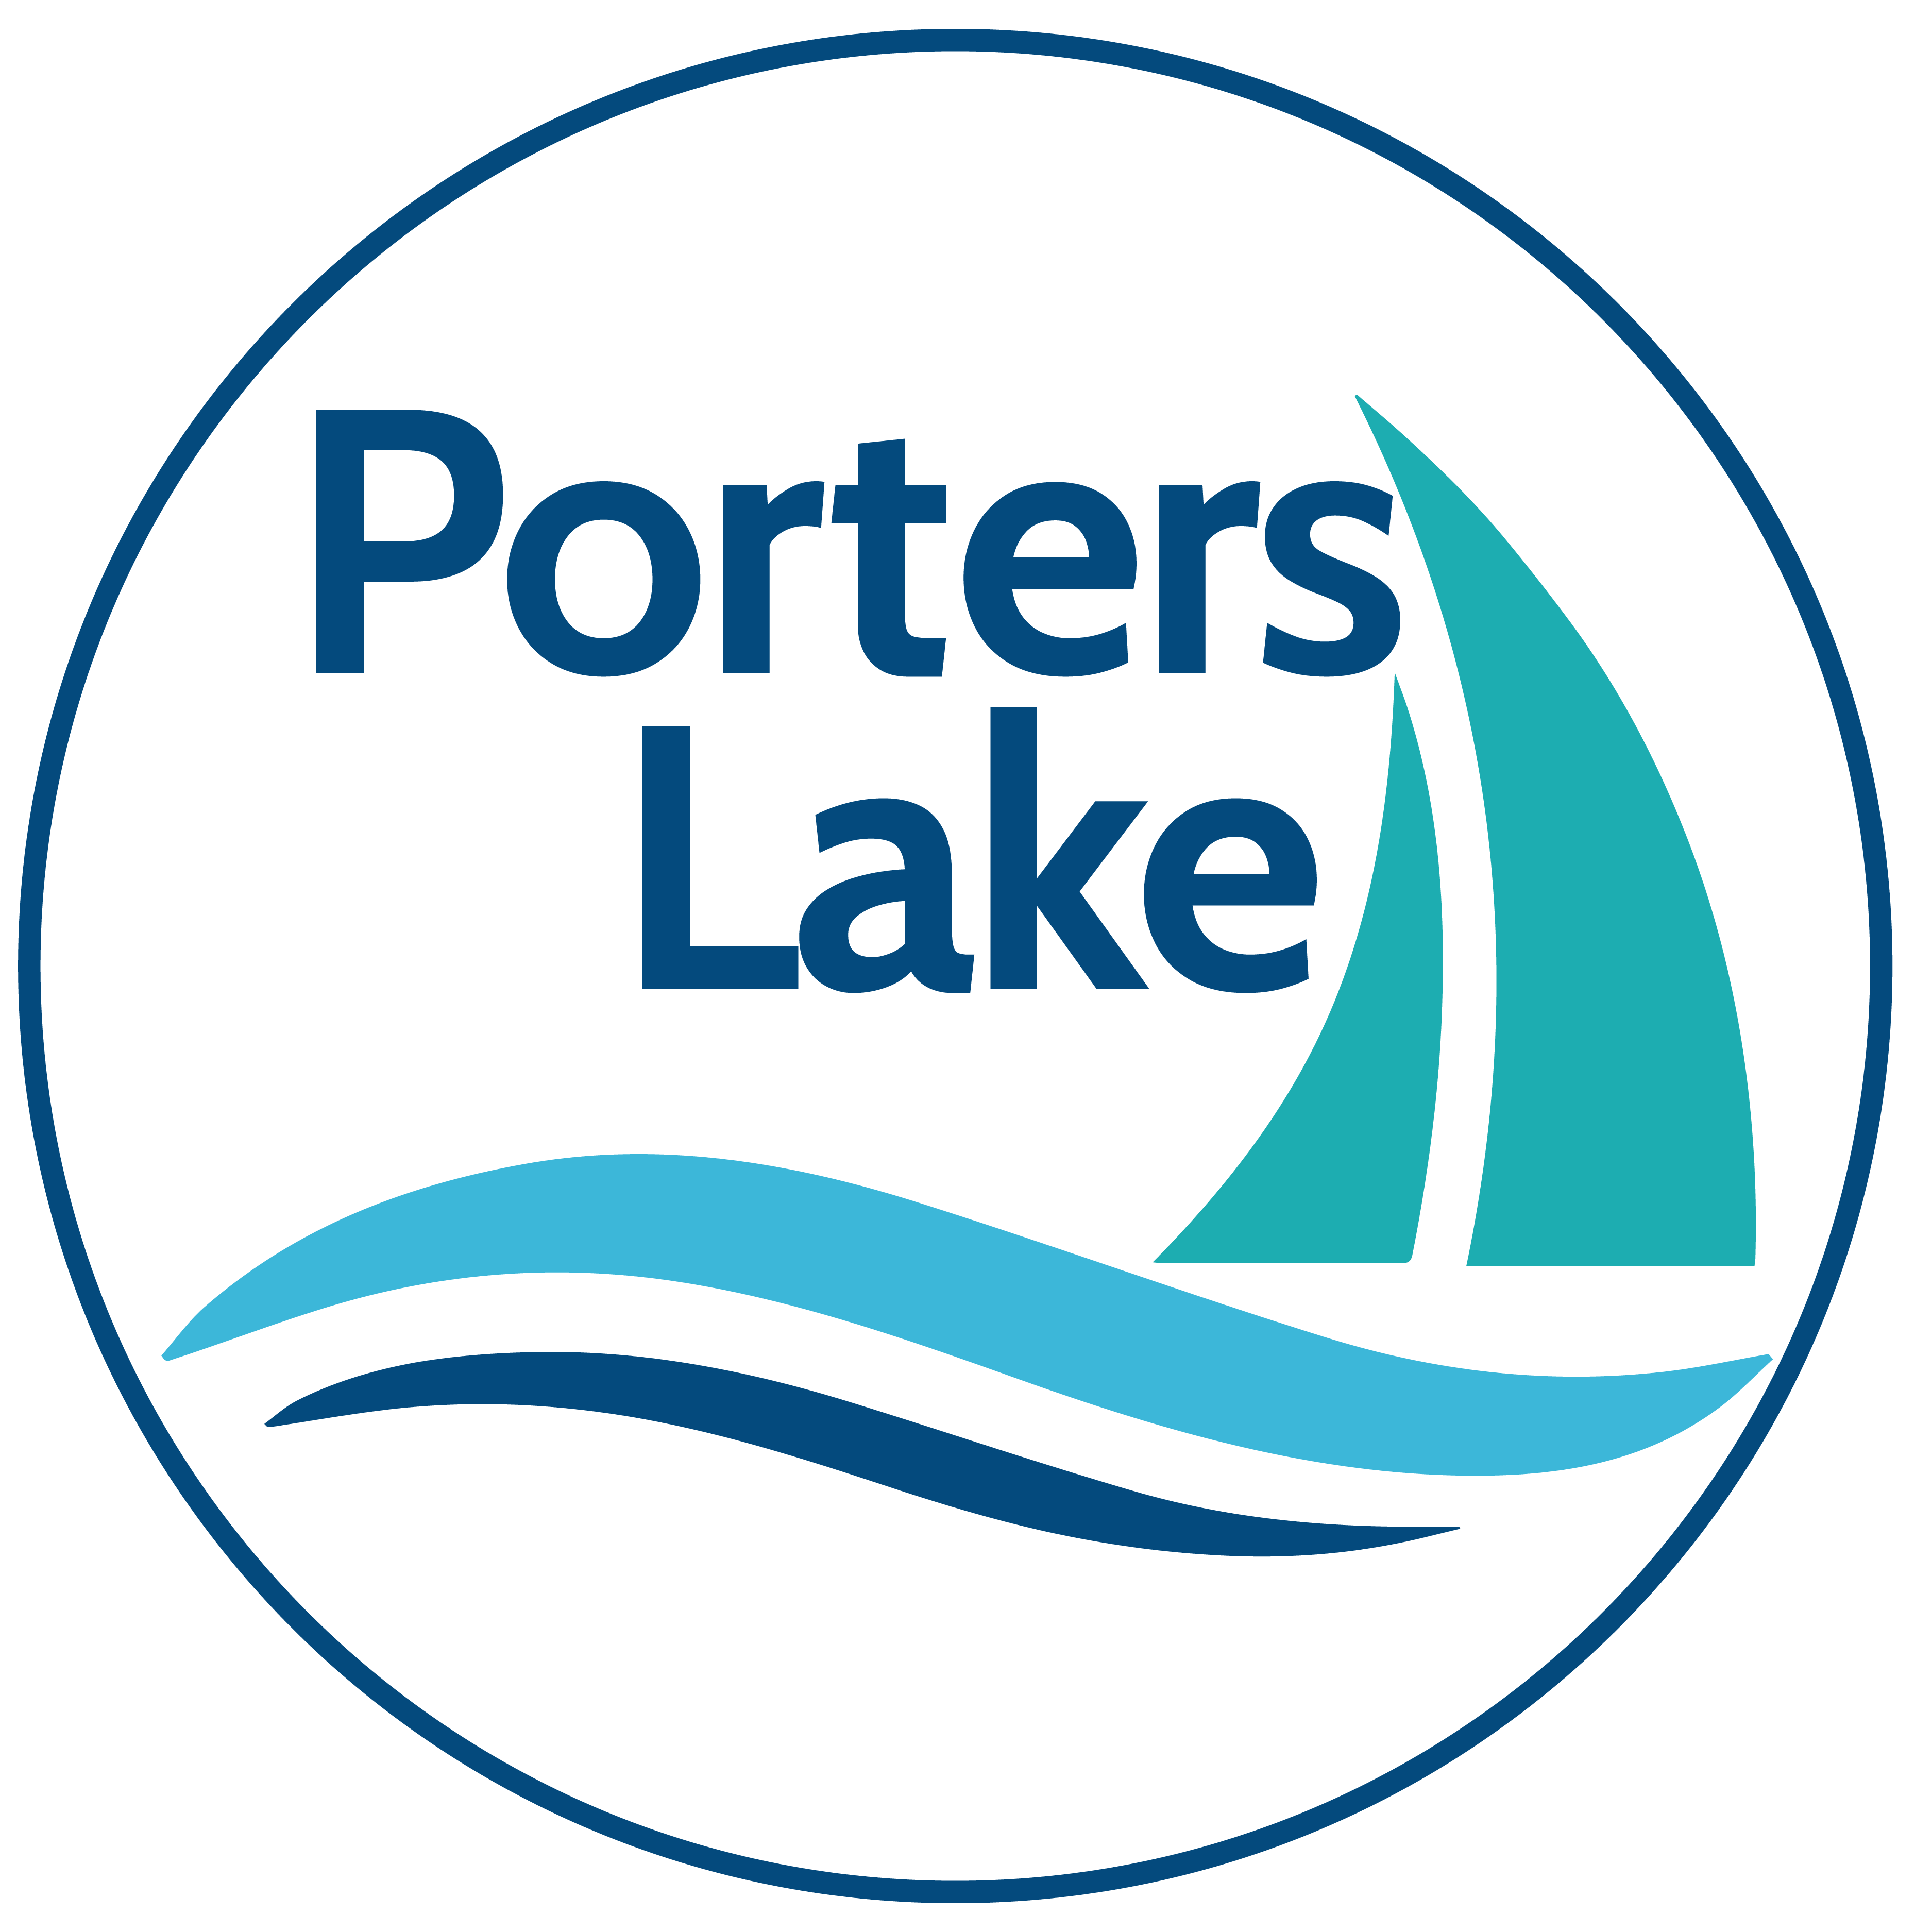 Porters Lake Nova Scotia Logo by Artsy Fartsy